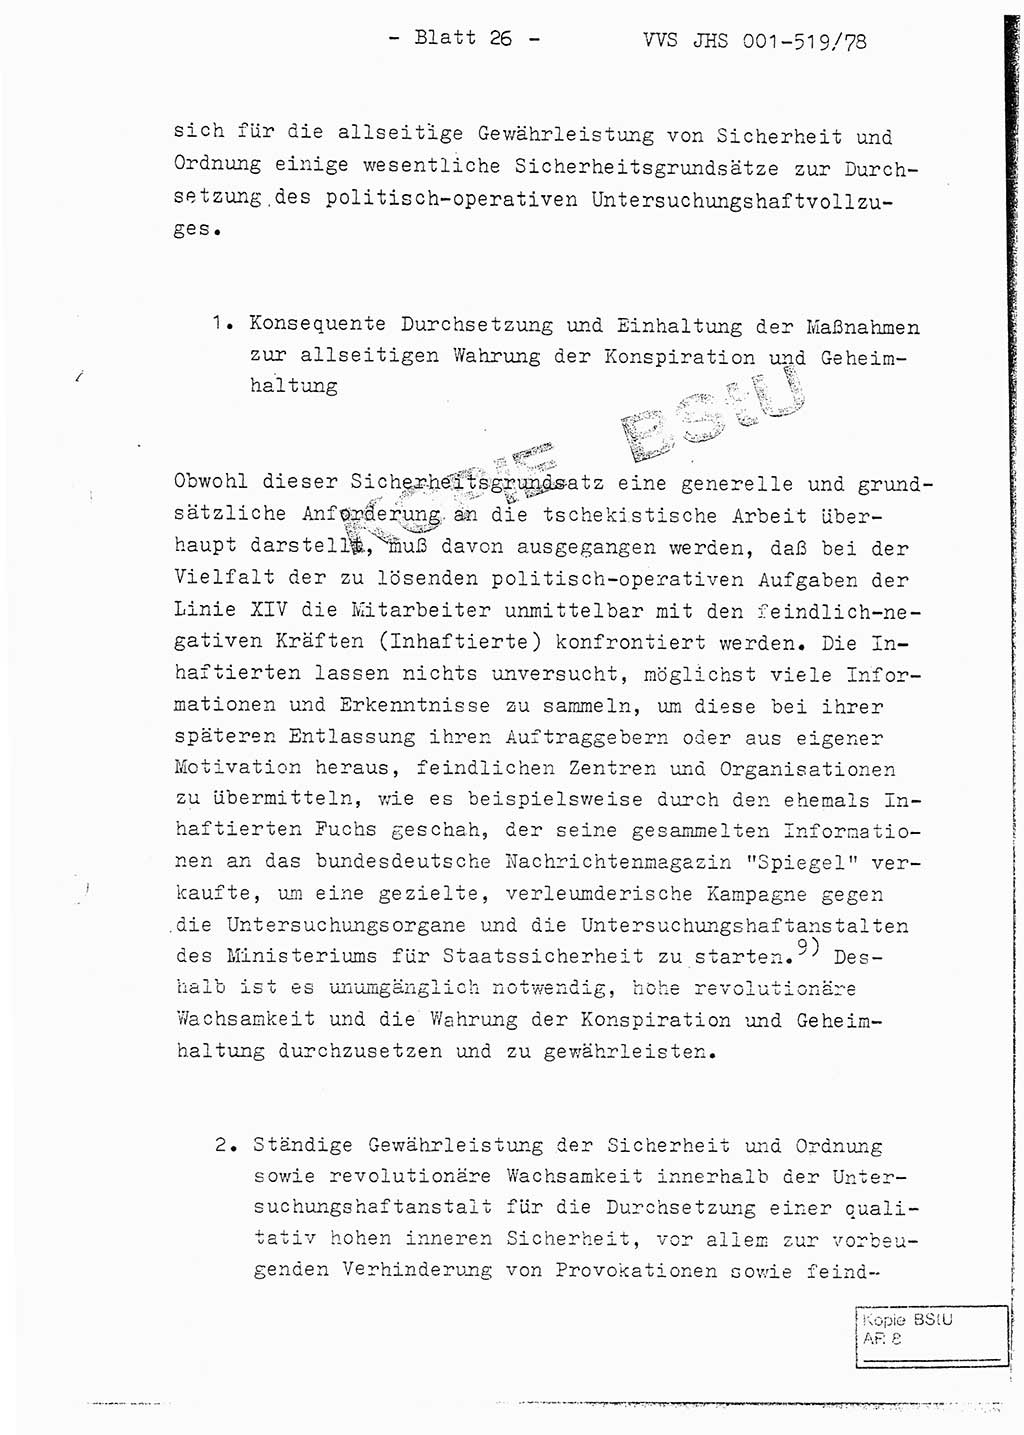 Fachschulabschlußarbeit Hauptmann Alfons Lützelberger (Abt. ⅩⅣ), Ministerium für Staatssicherheit (MfS) [Deutsche Demokratische Republik (DDR)], Juristische Hochschule (JHS), Vertrauliche Verschlußsache (VVS) 001-519/78, Potsdam 1978, Blatt 26 (FS-Abschl.-Arb. MfS DDR JHS VVS 001-519/78 1978, Bl. 26)